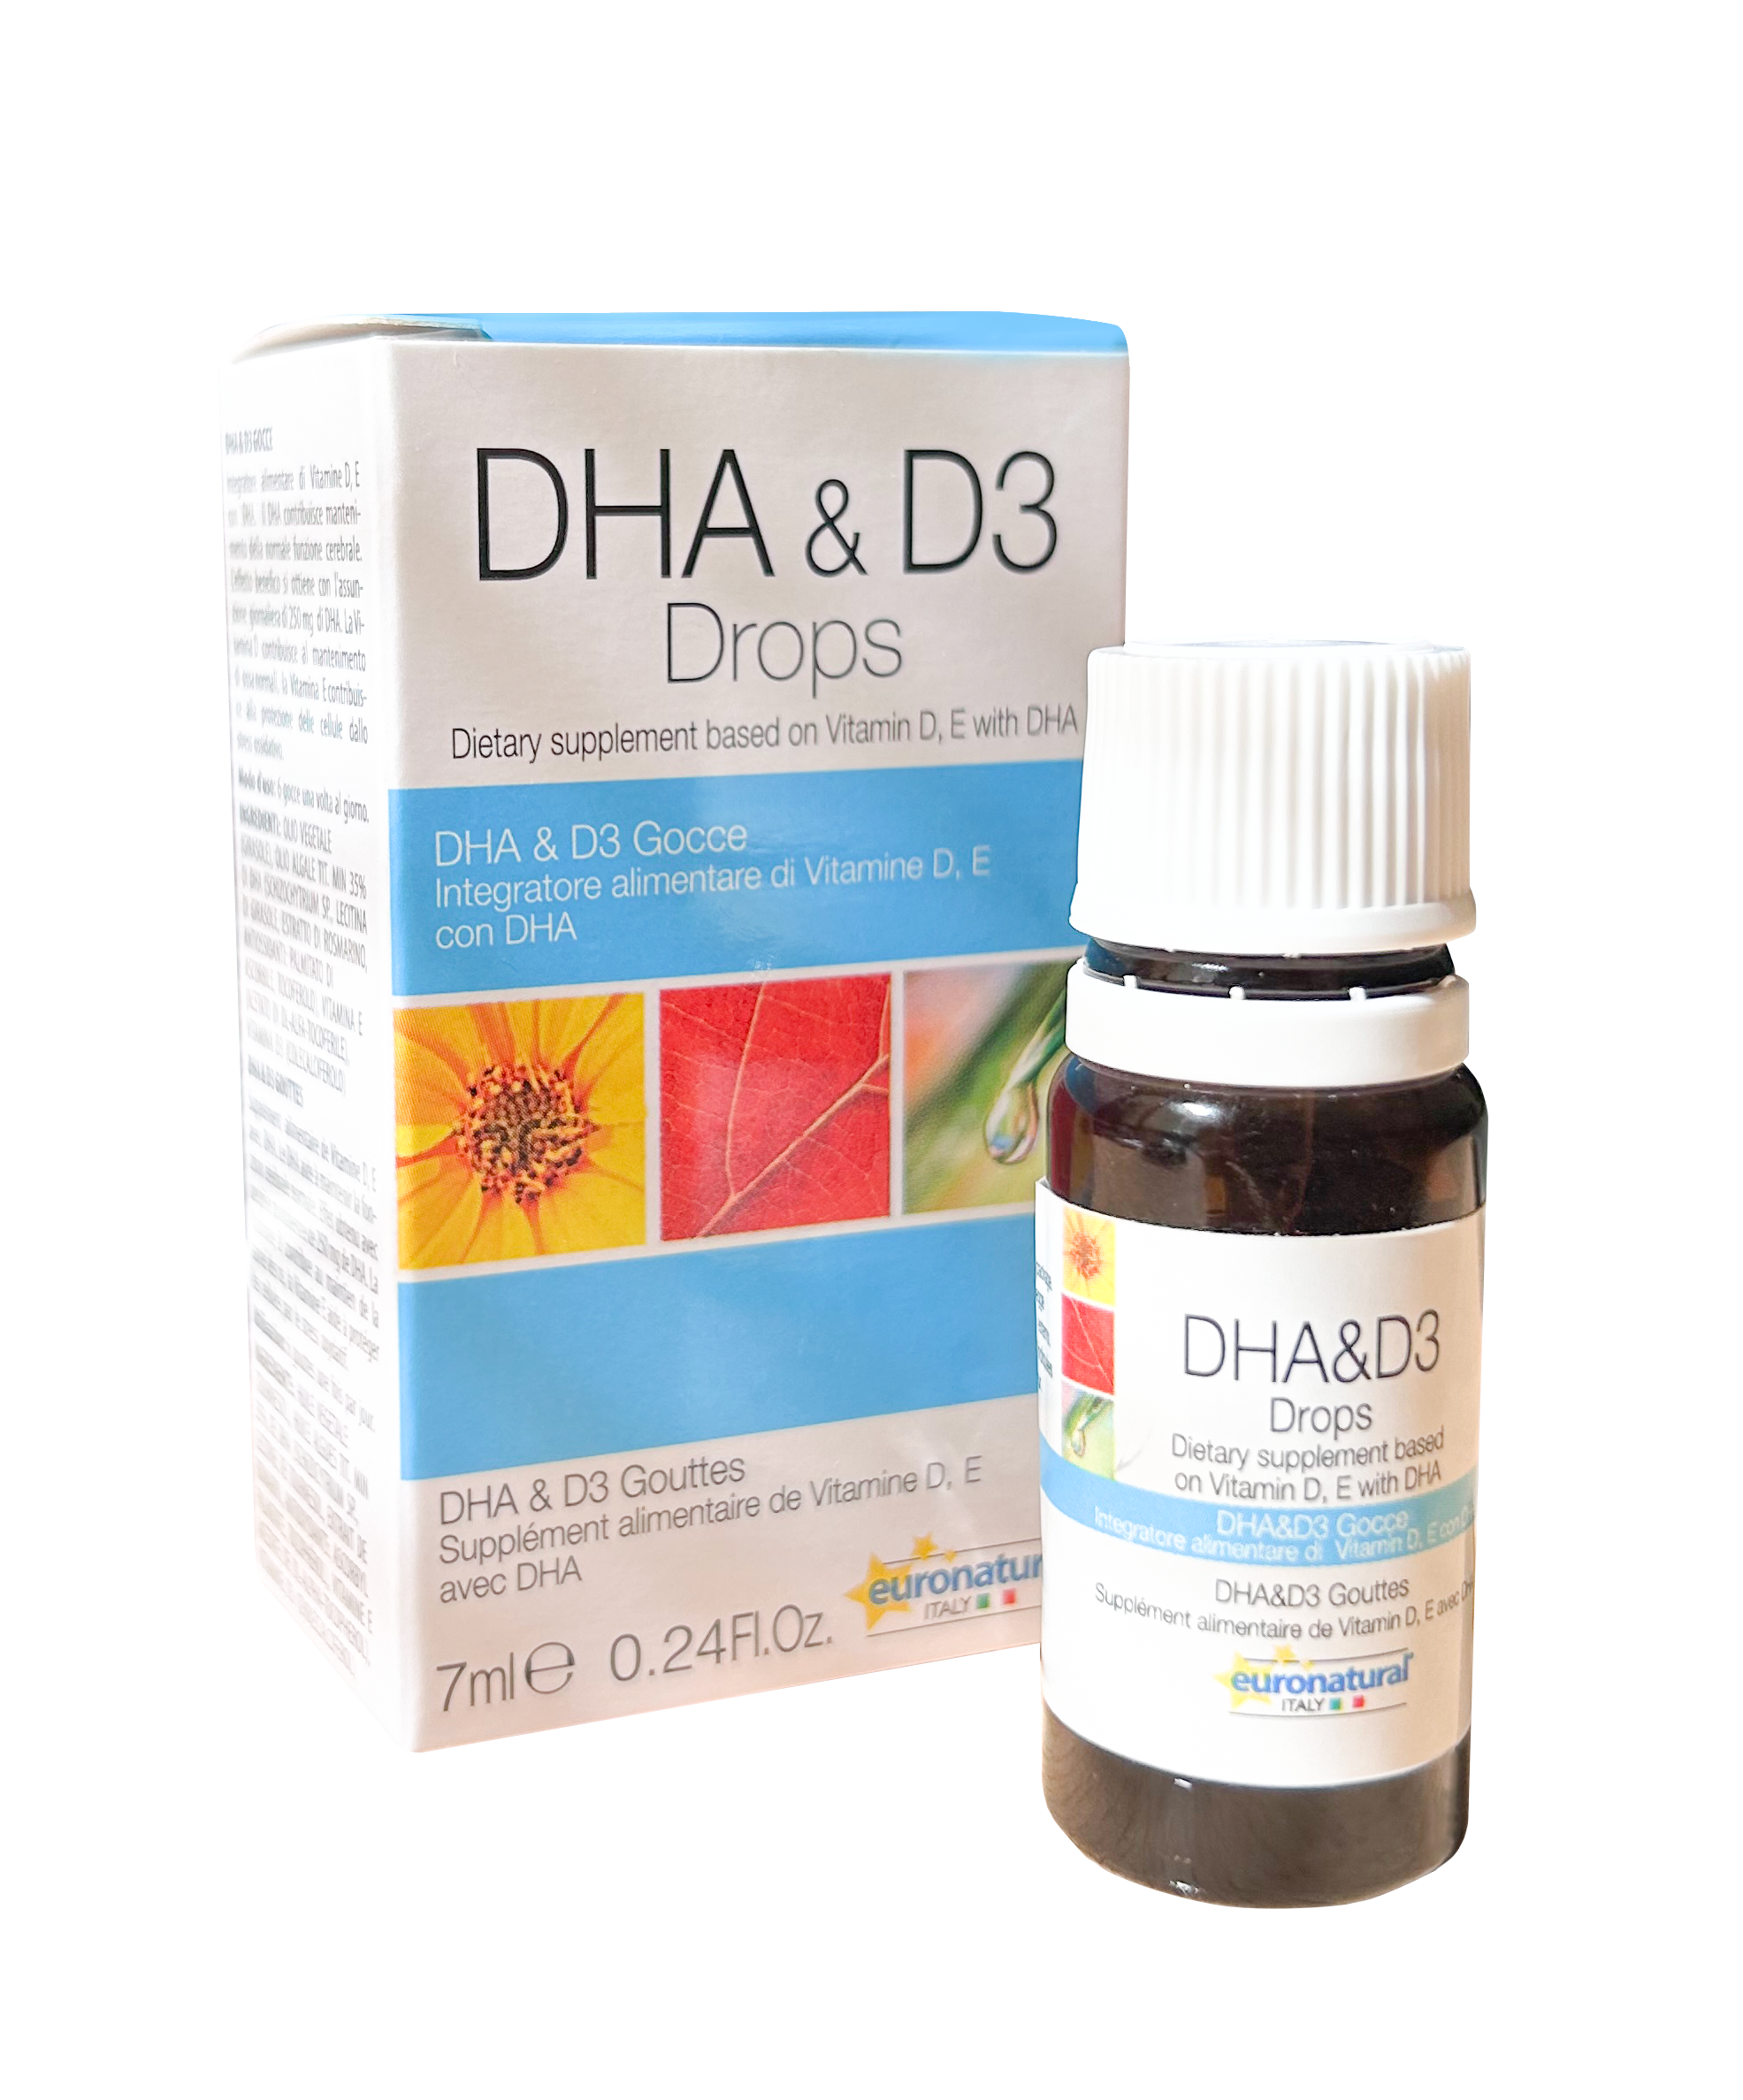 DHA & D3 / DHA & D3